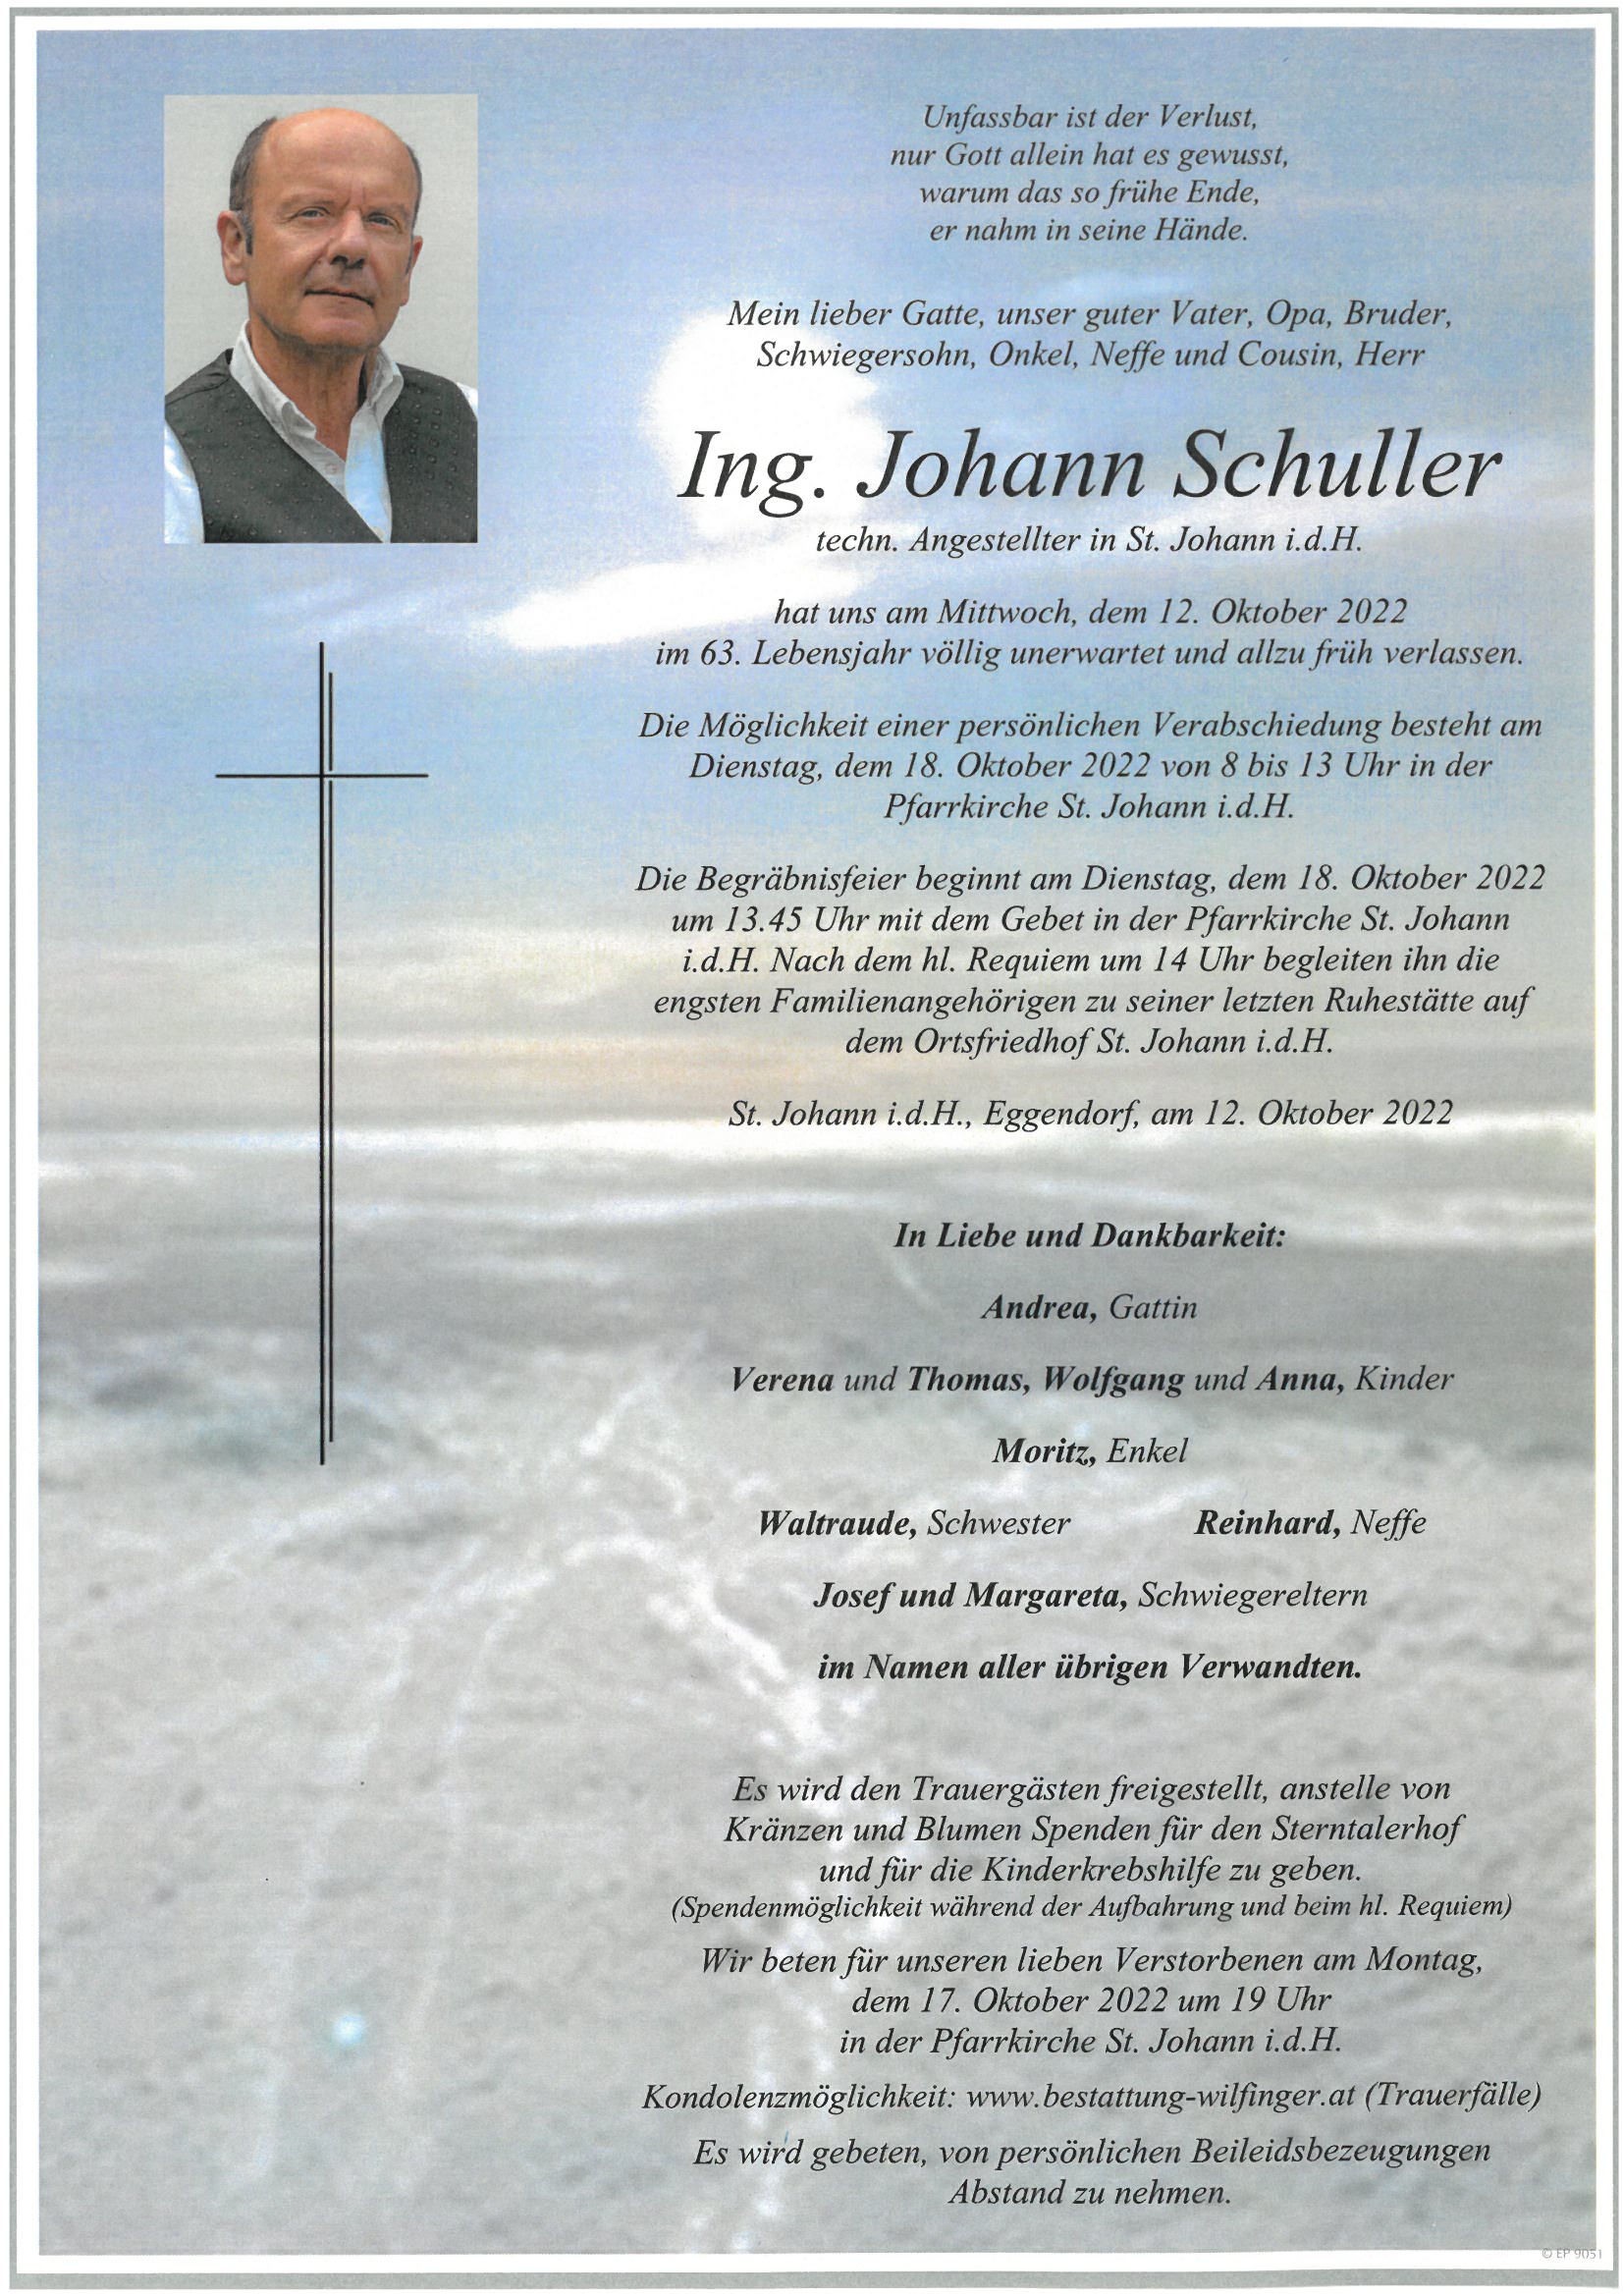 Ing. Johann Schuller, St. Johann i.d.H.